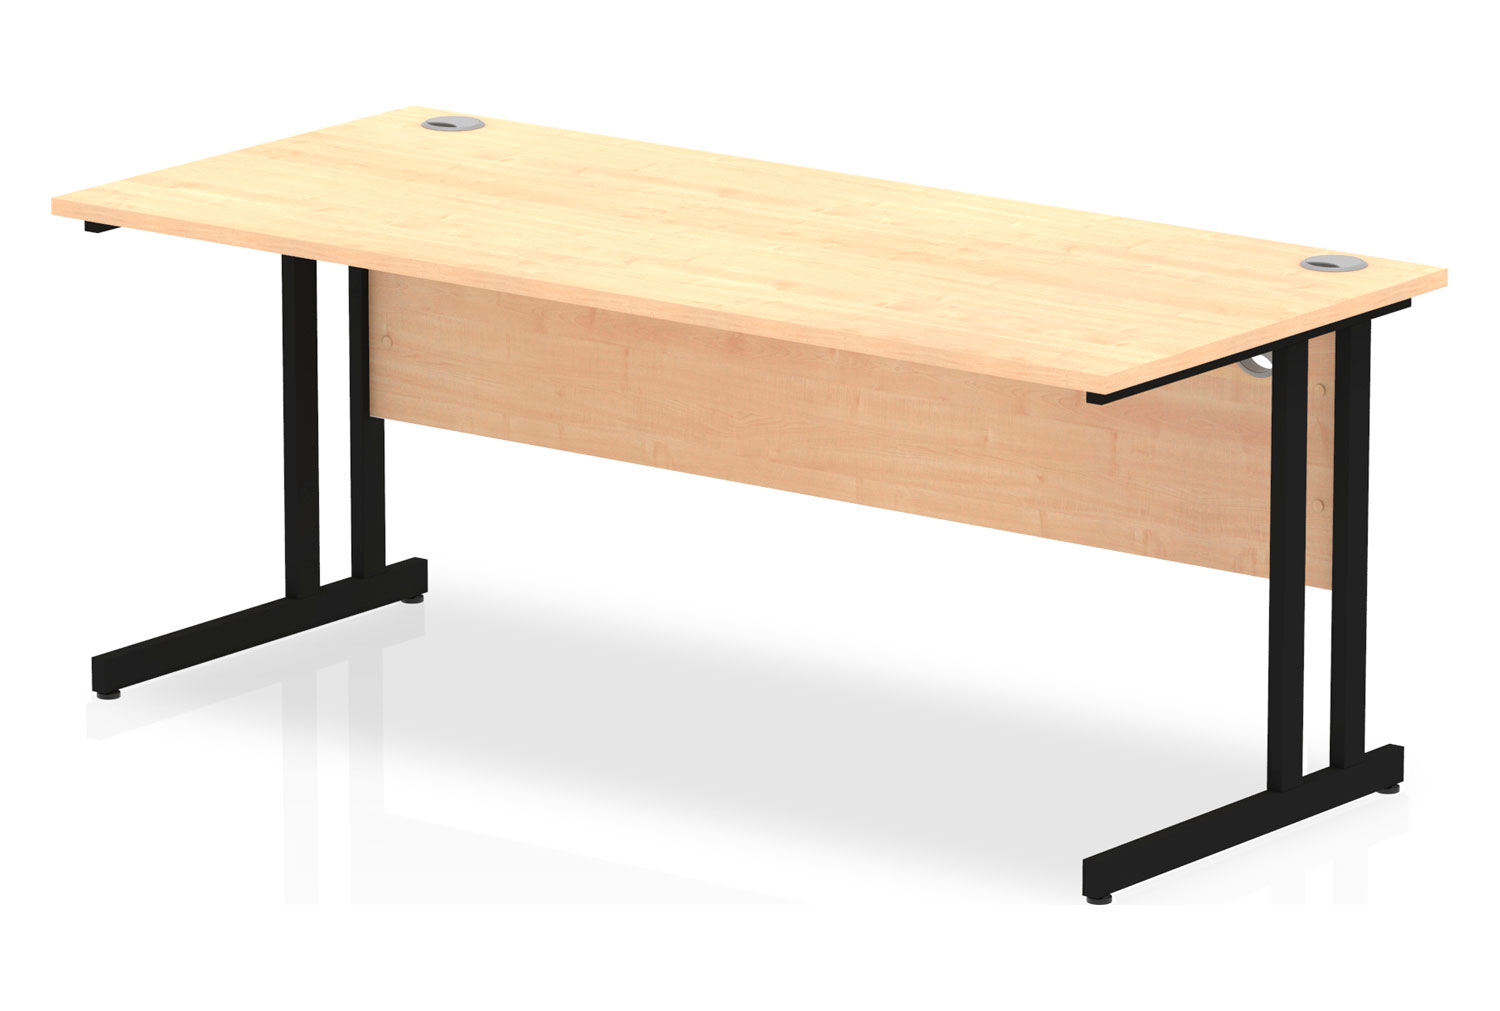 Vitali C-Leg Rectangular Office Desk (Black Legs), 180wx80dx73h (cm), Maple